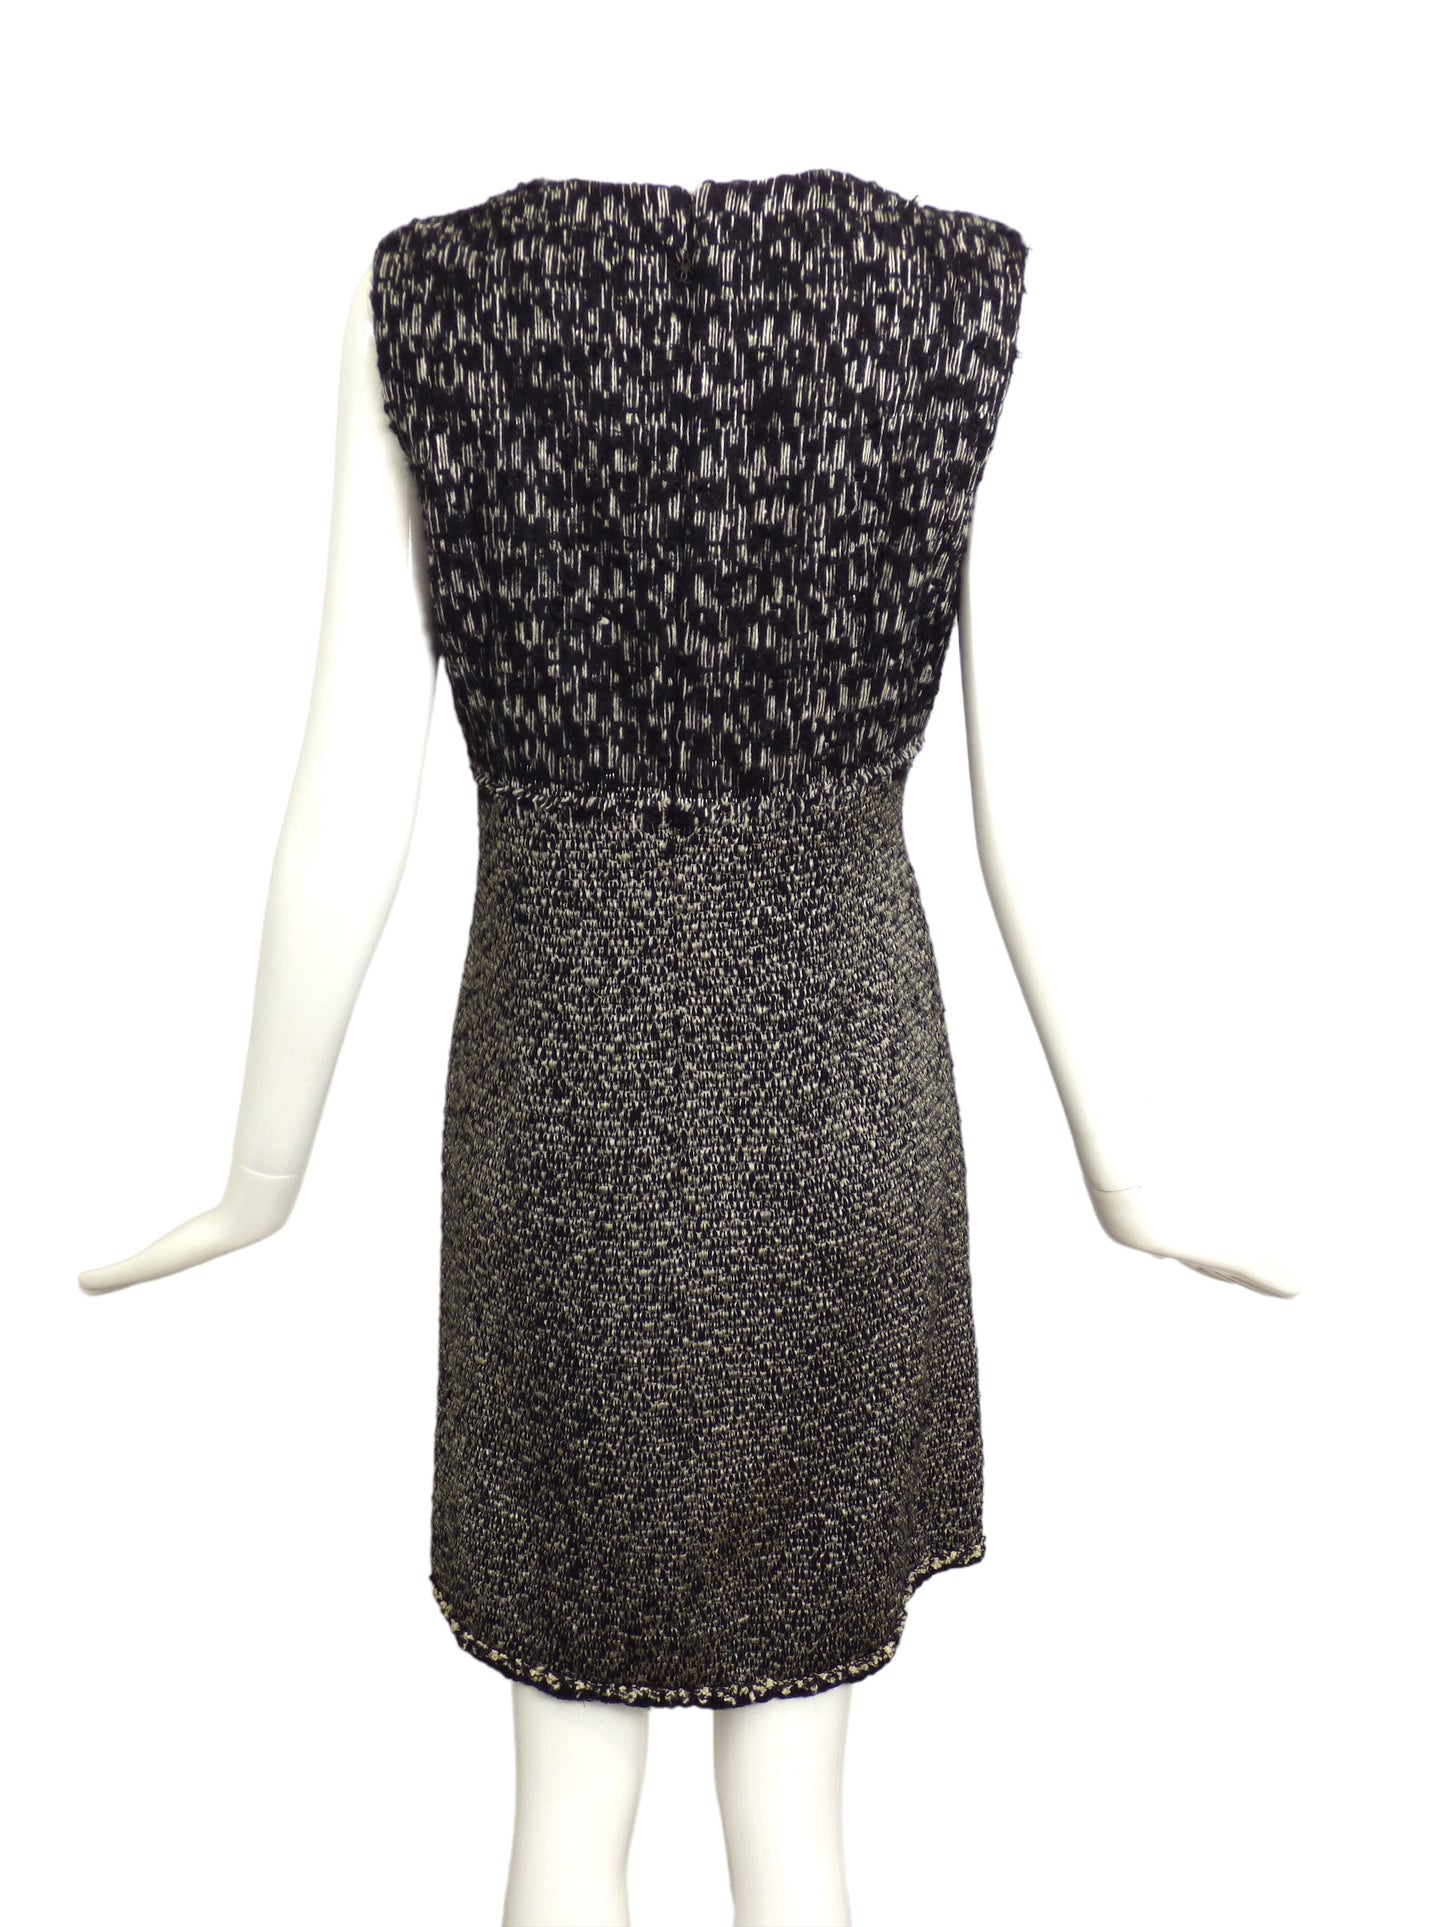 CHANEL-Black & White Wool Shift Dress, Size-12